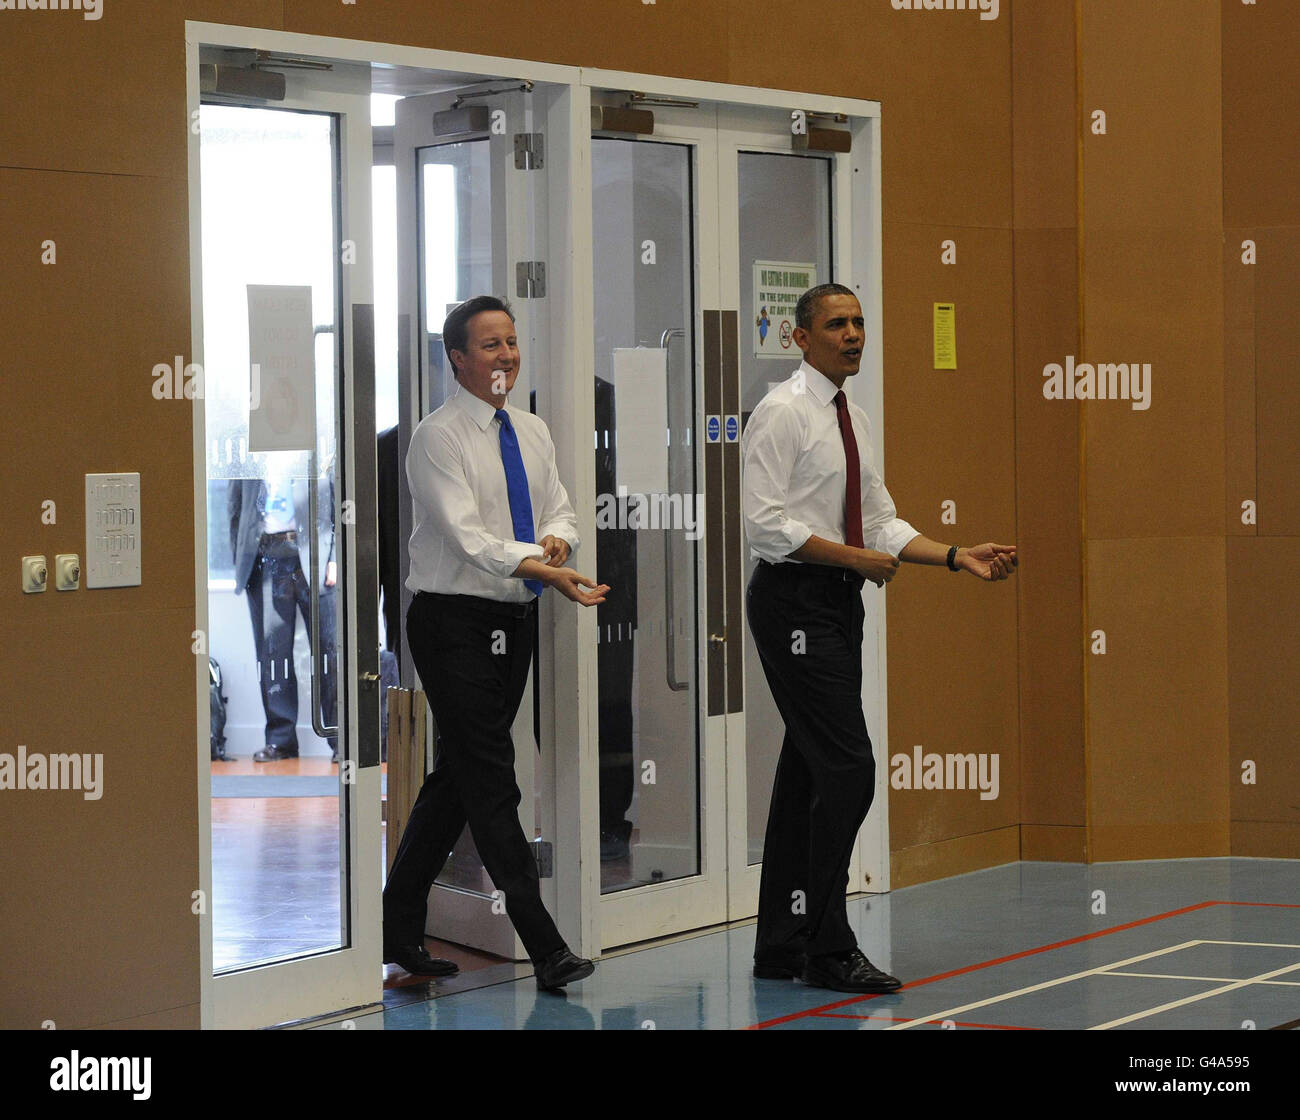 Der US-Präsident Barack Obama und der britische Premierminister David Cameron Rollen ihre Hemdärmel hoch, als sie in das Gymnasium gehen, um in der Globe Academy im Süden Londons Tischtennis zu spielen, während der Präsident zu einem dreitägigen Staatsbesuch in Großbritannien aufbricht. Stockfoto